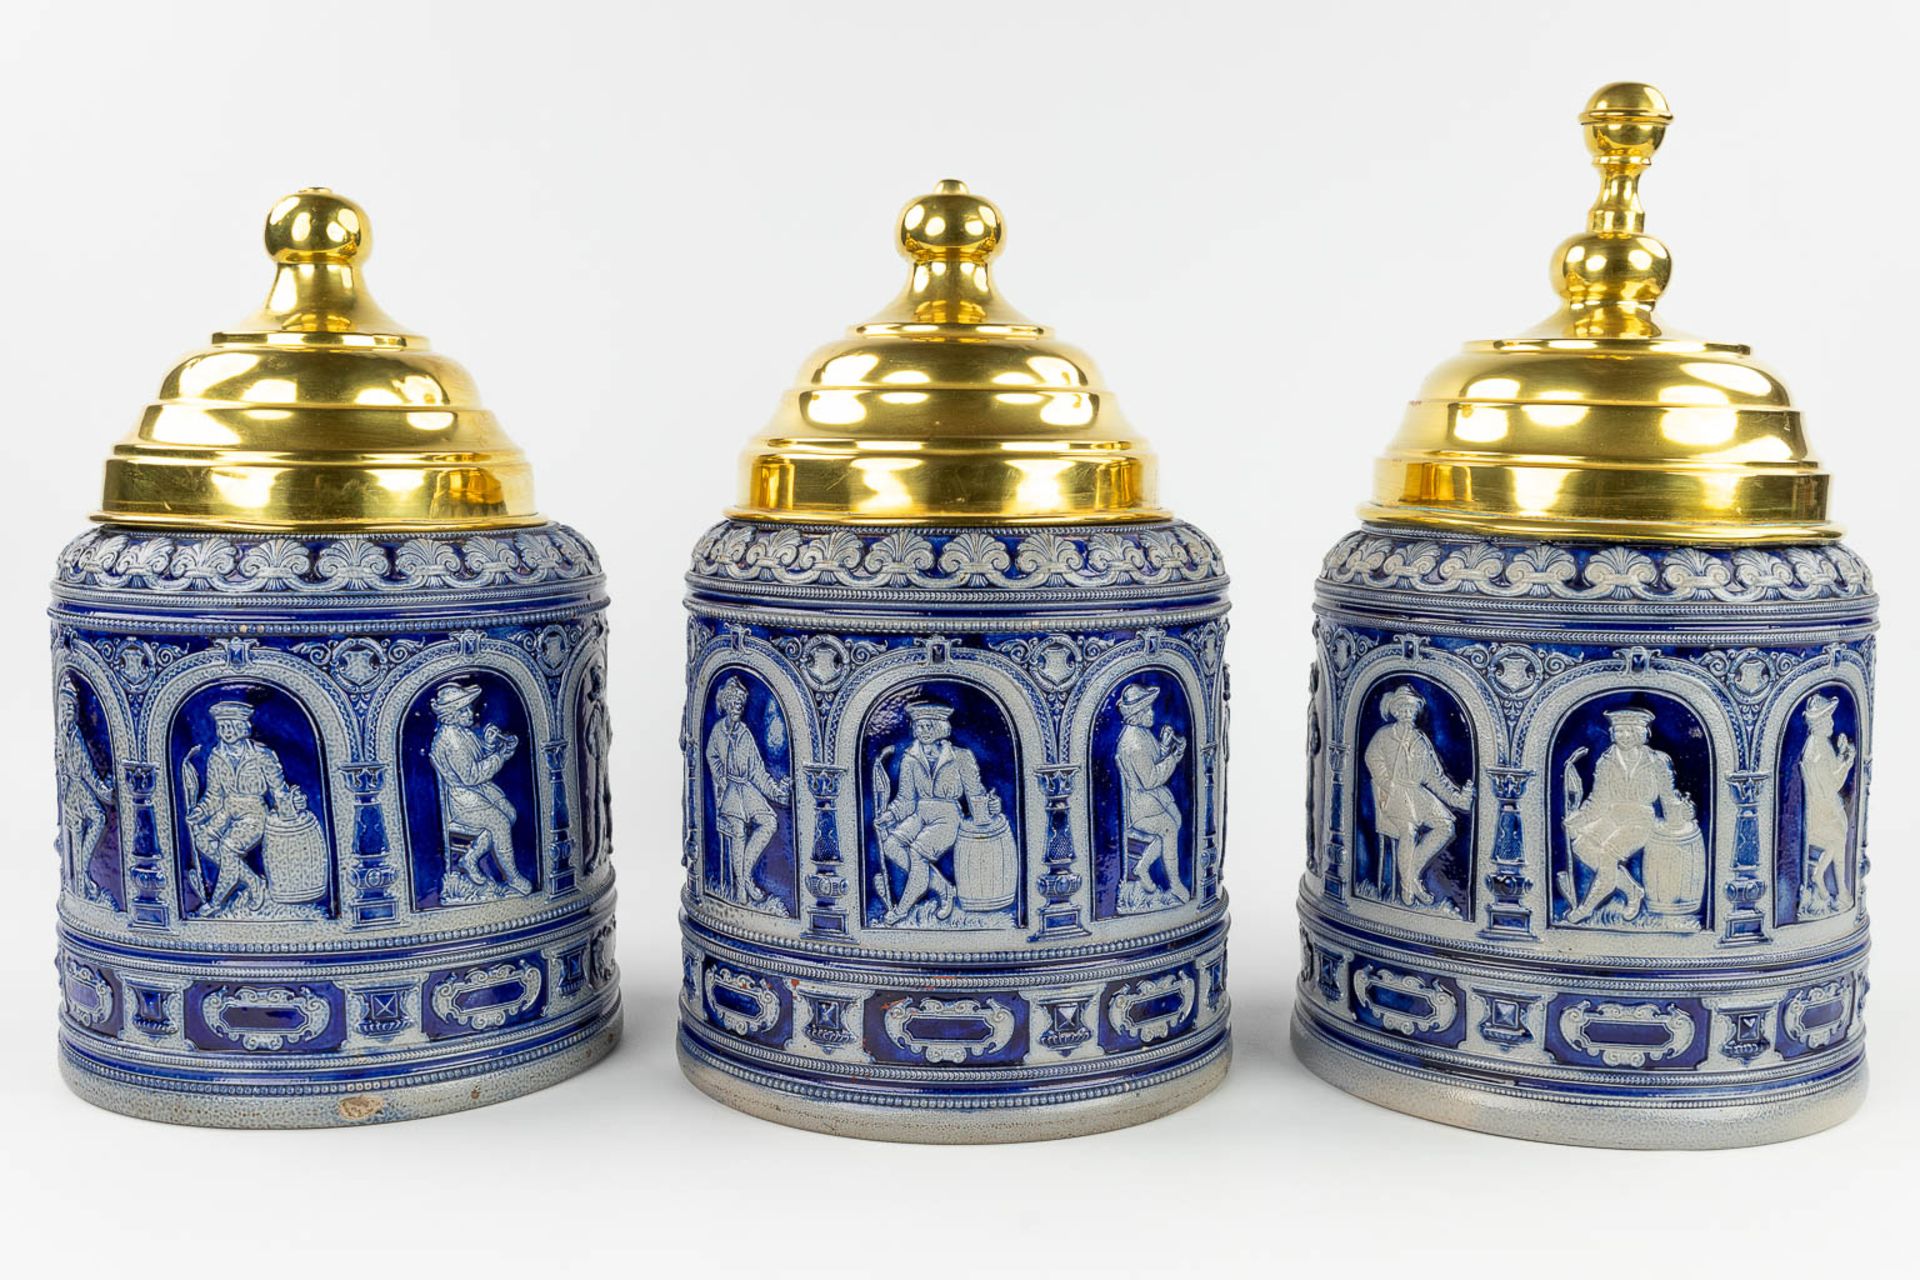 A set of 3 grs tabacco jars with brass lid, Germany, 19th C. (H: 38 x D: 23 cm) - Image 4 of 17